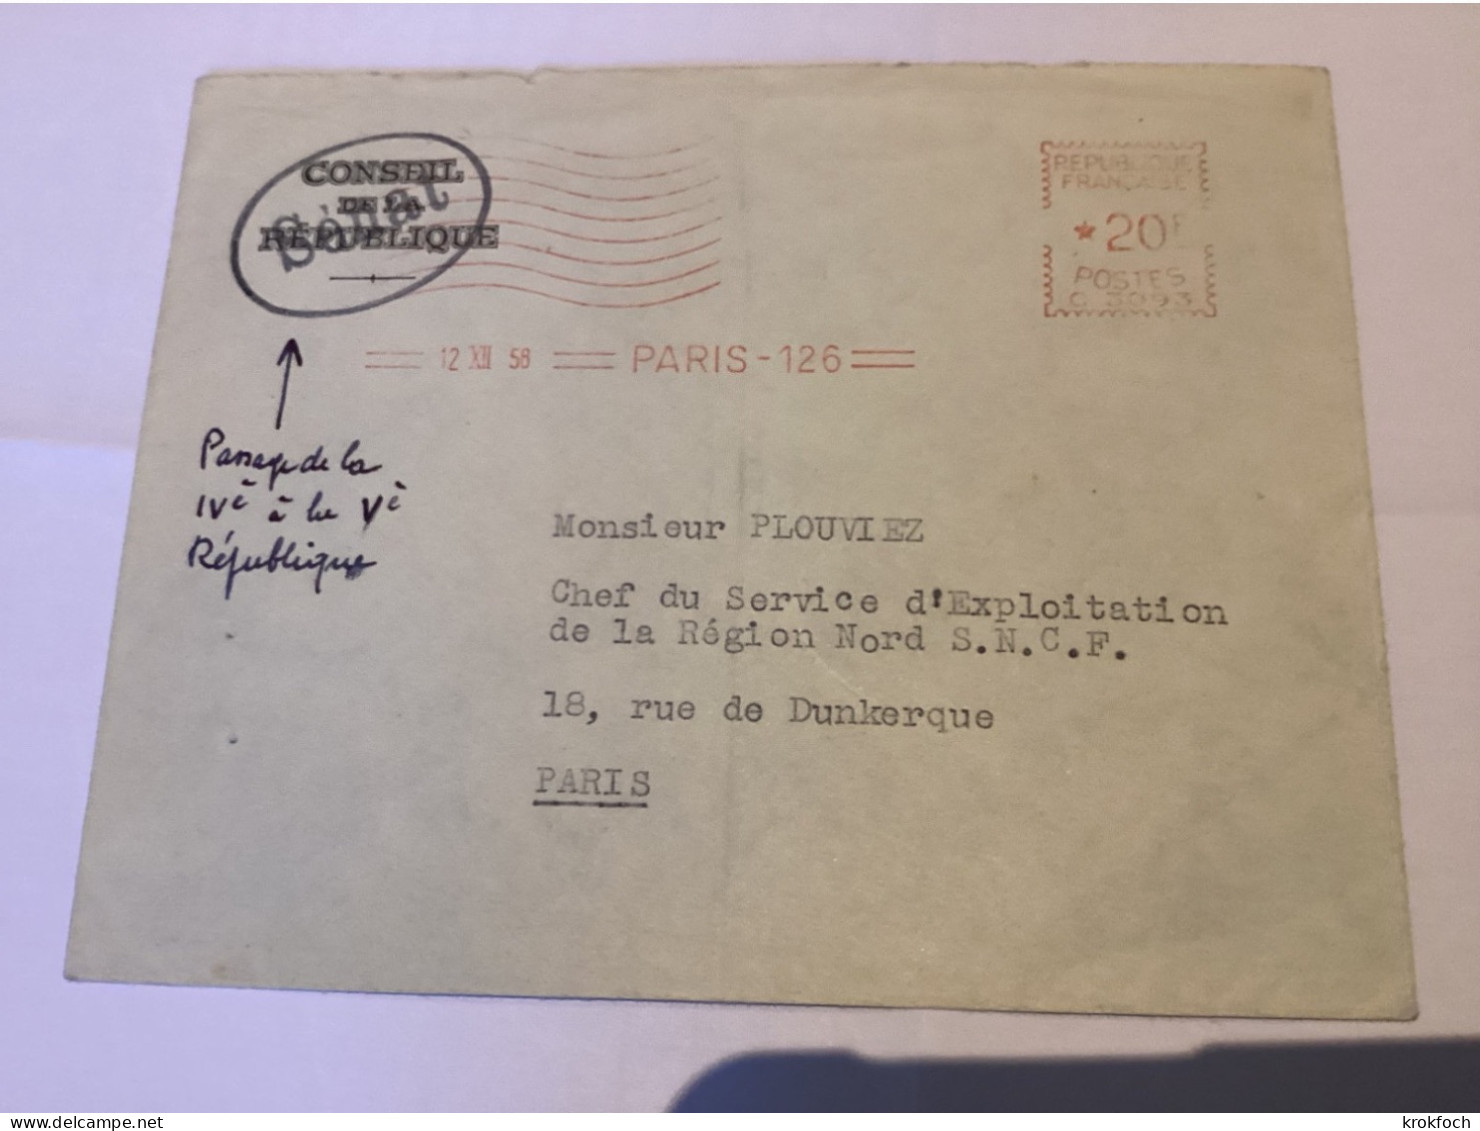 Paris 126 - 12.1958 - Conseil De La République Surchargé Sénat - Passage IVéme à Véme République - EMA (Printer Machine)